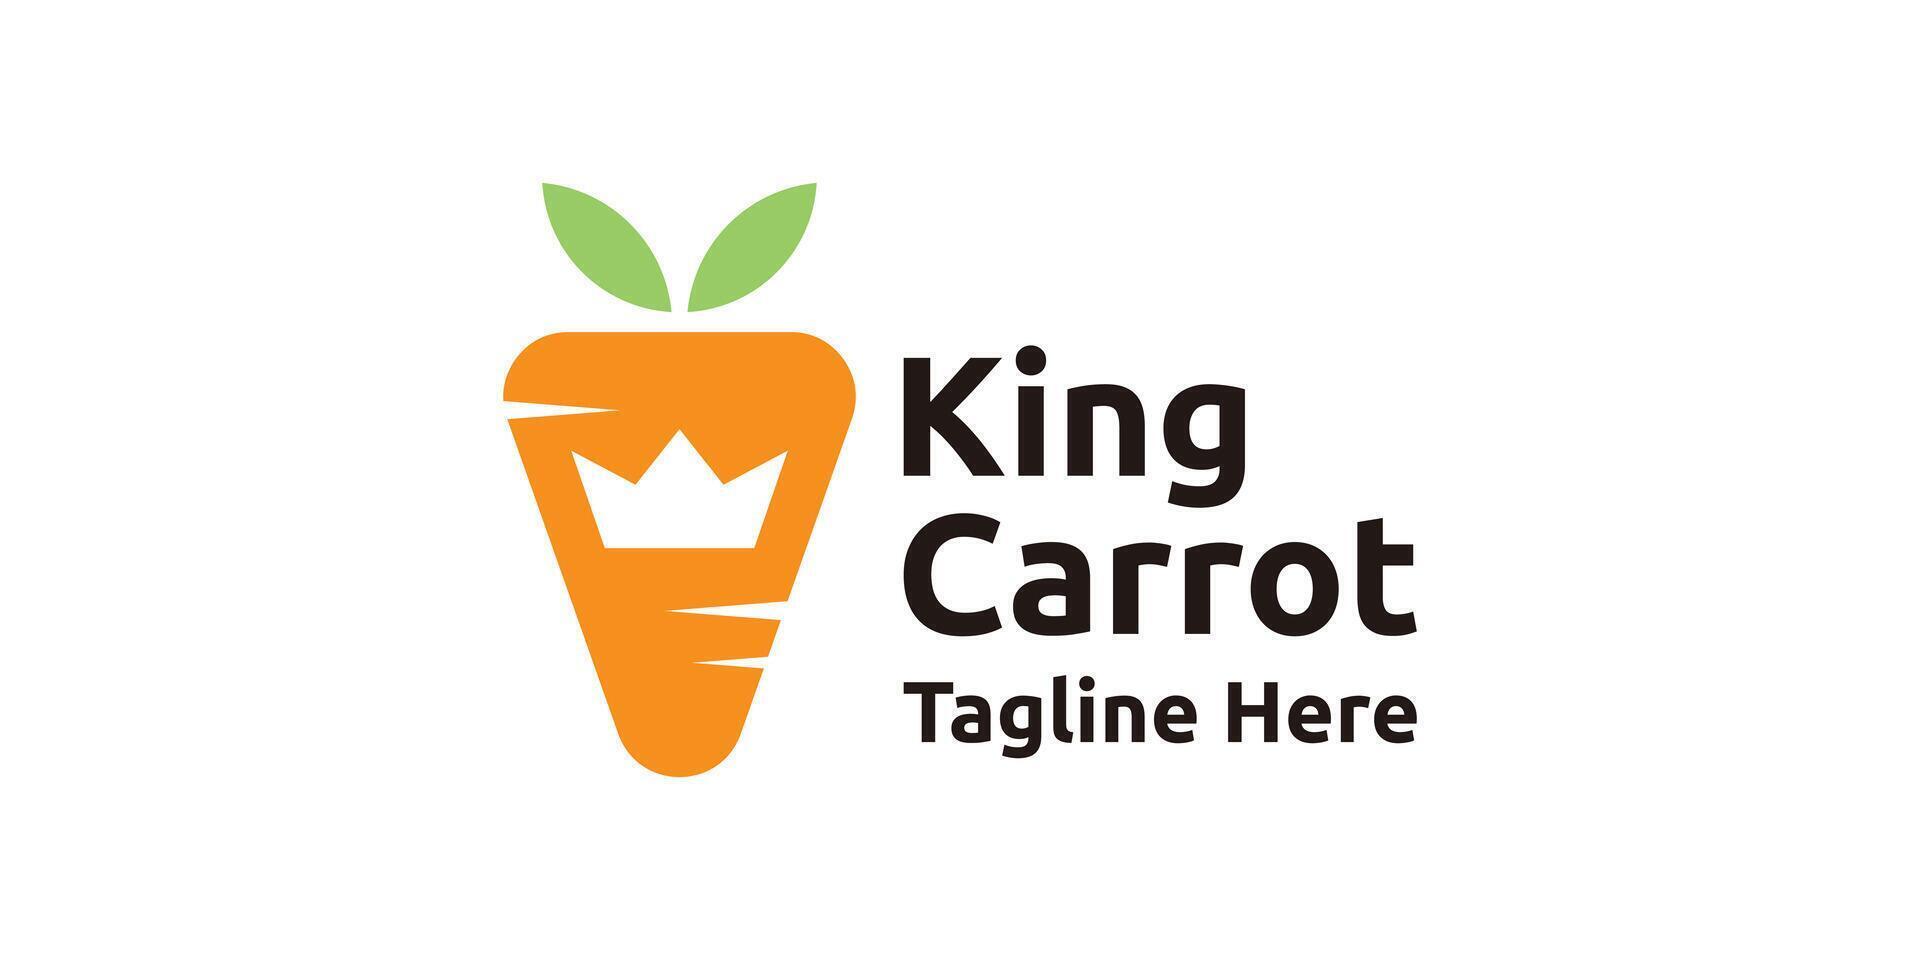 carrot logo design with crown, logo design template, symbol, idea, creative vector